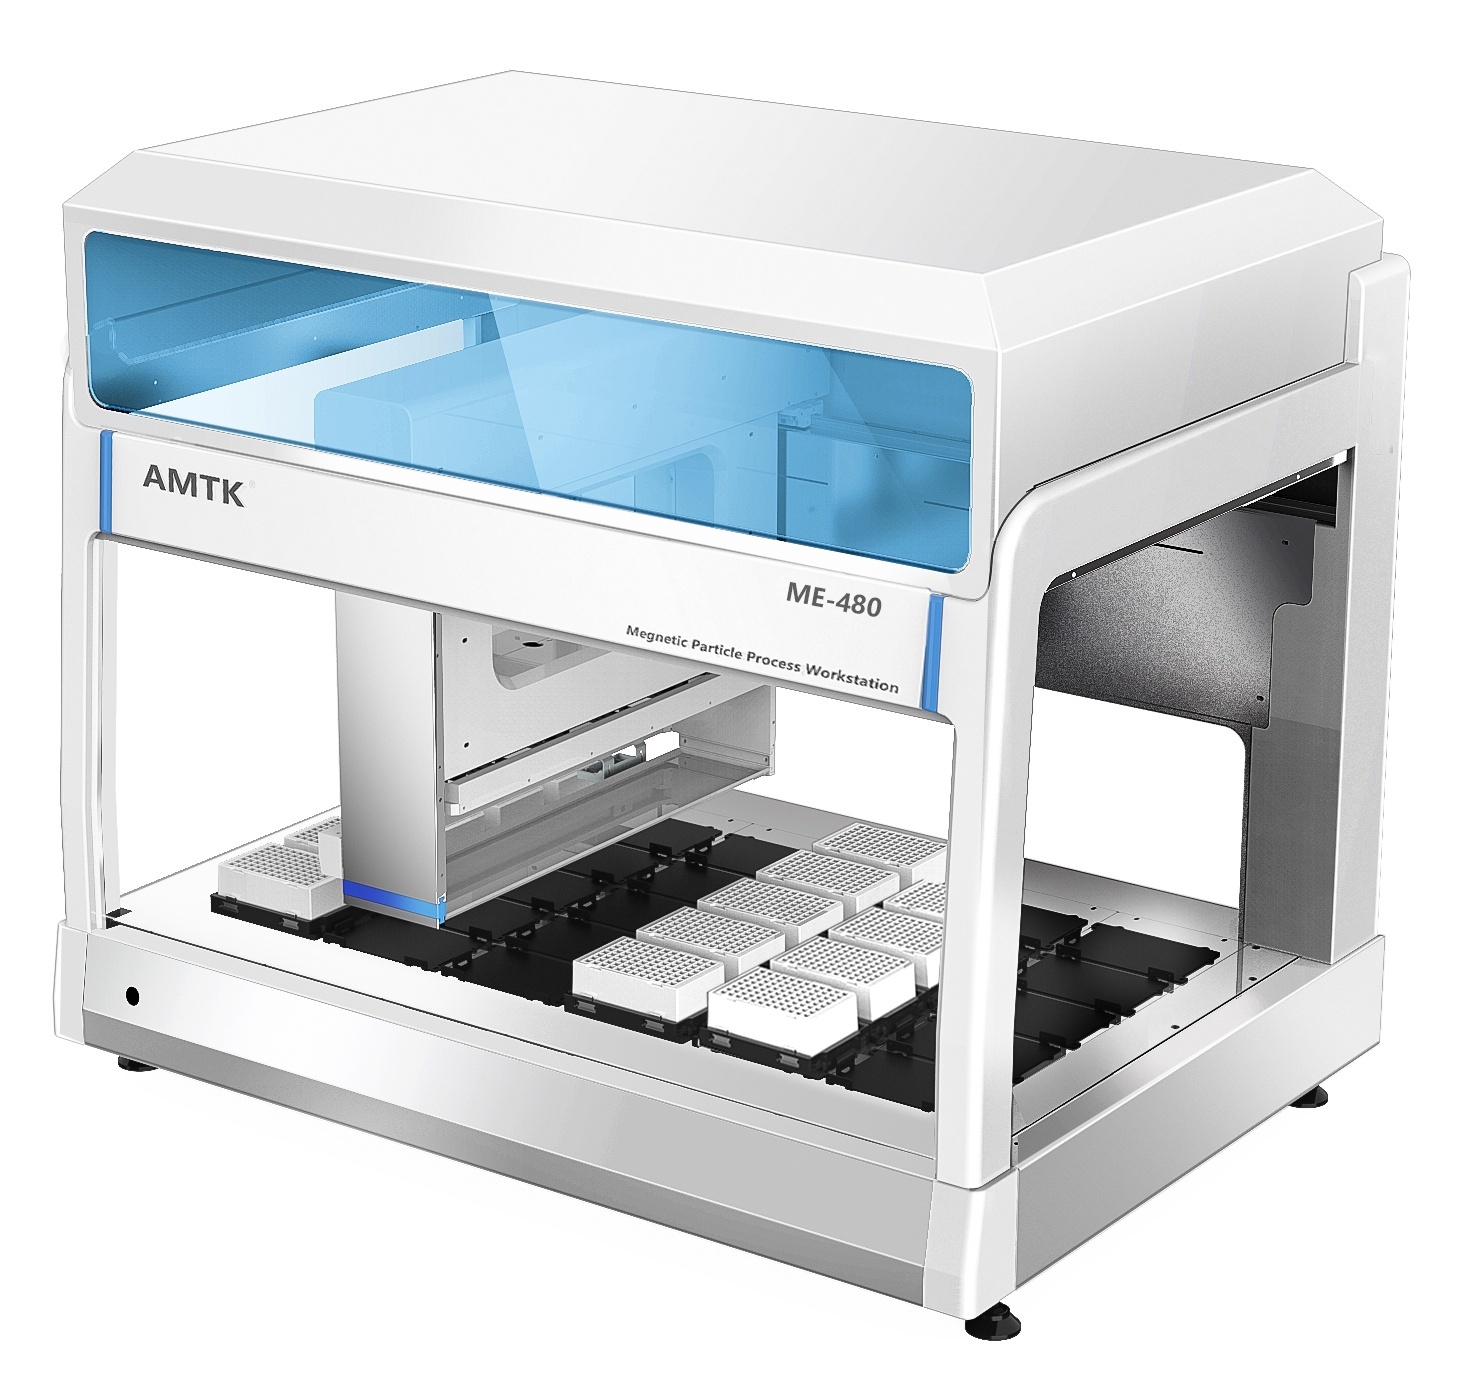 AMTK ME-480超高通量全自动核酸提取系统的图片